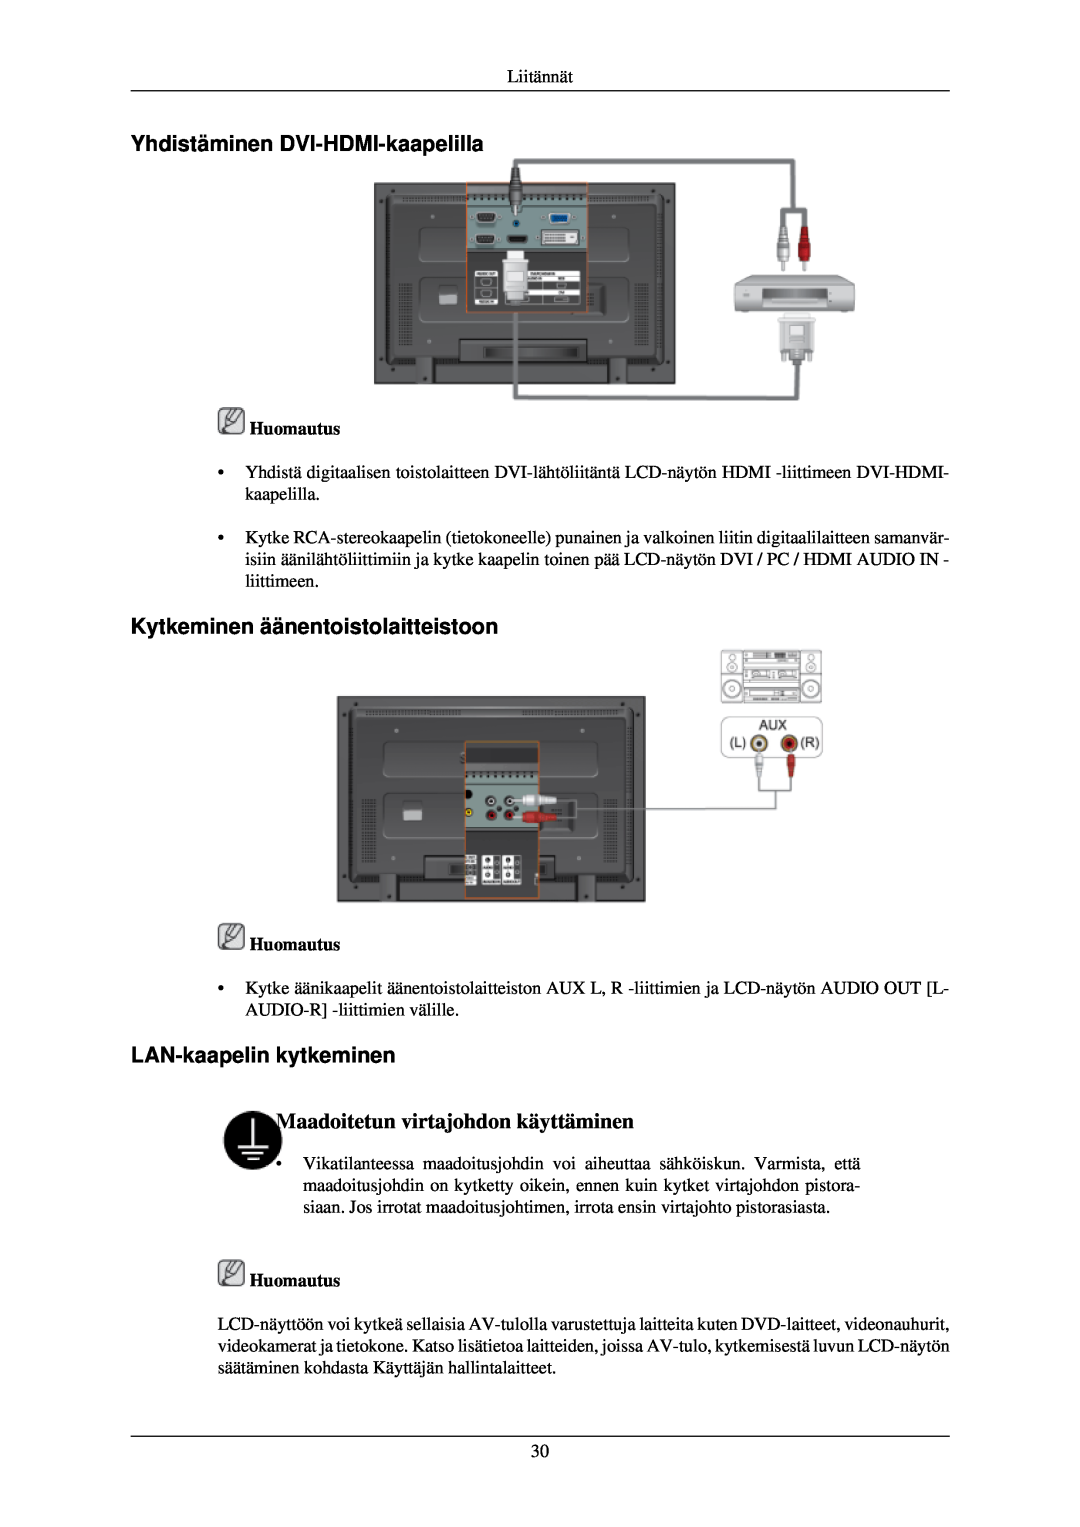 Samsung LH46TCUMBC/EN manual Yhdistäminen DVI-HDMI-kaapelilla, Kytkeminen äänentoistolaitteistoon, LAN-kaapelin kytkeminen 